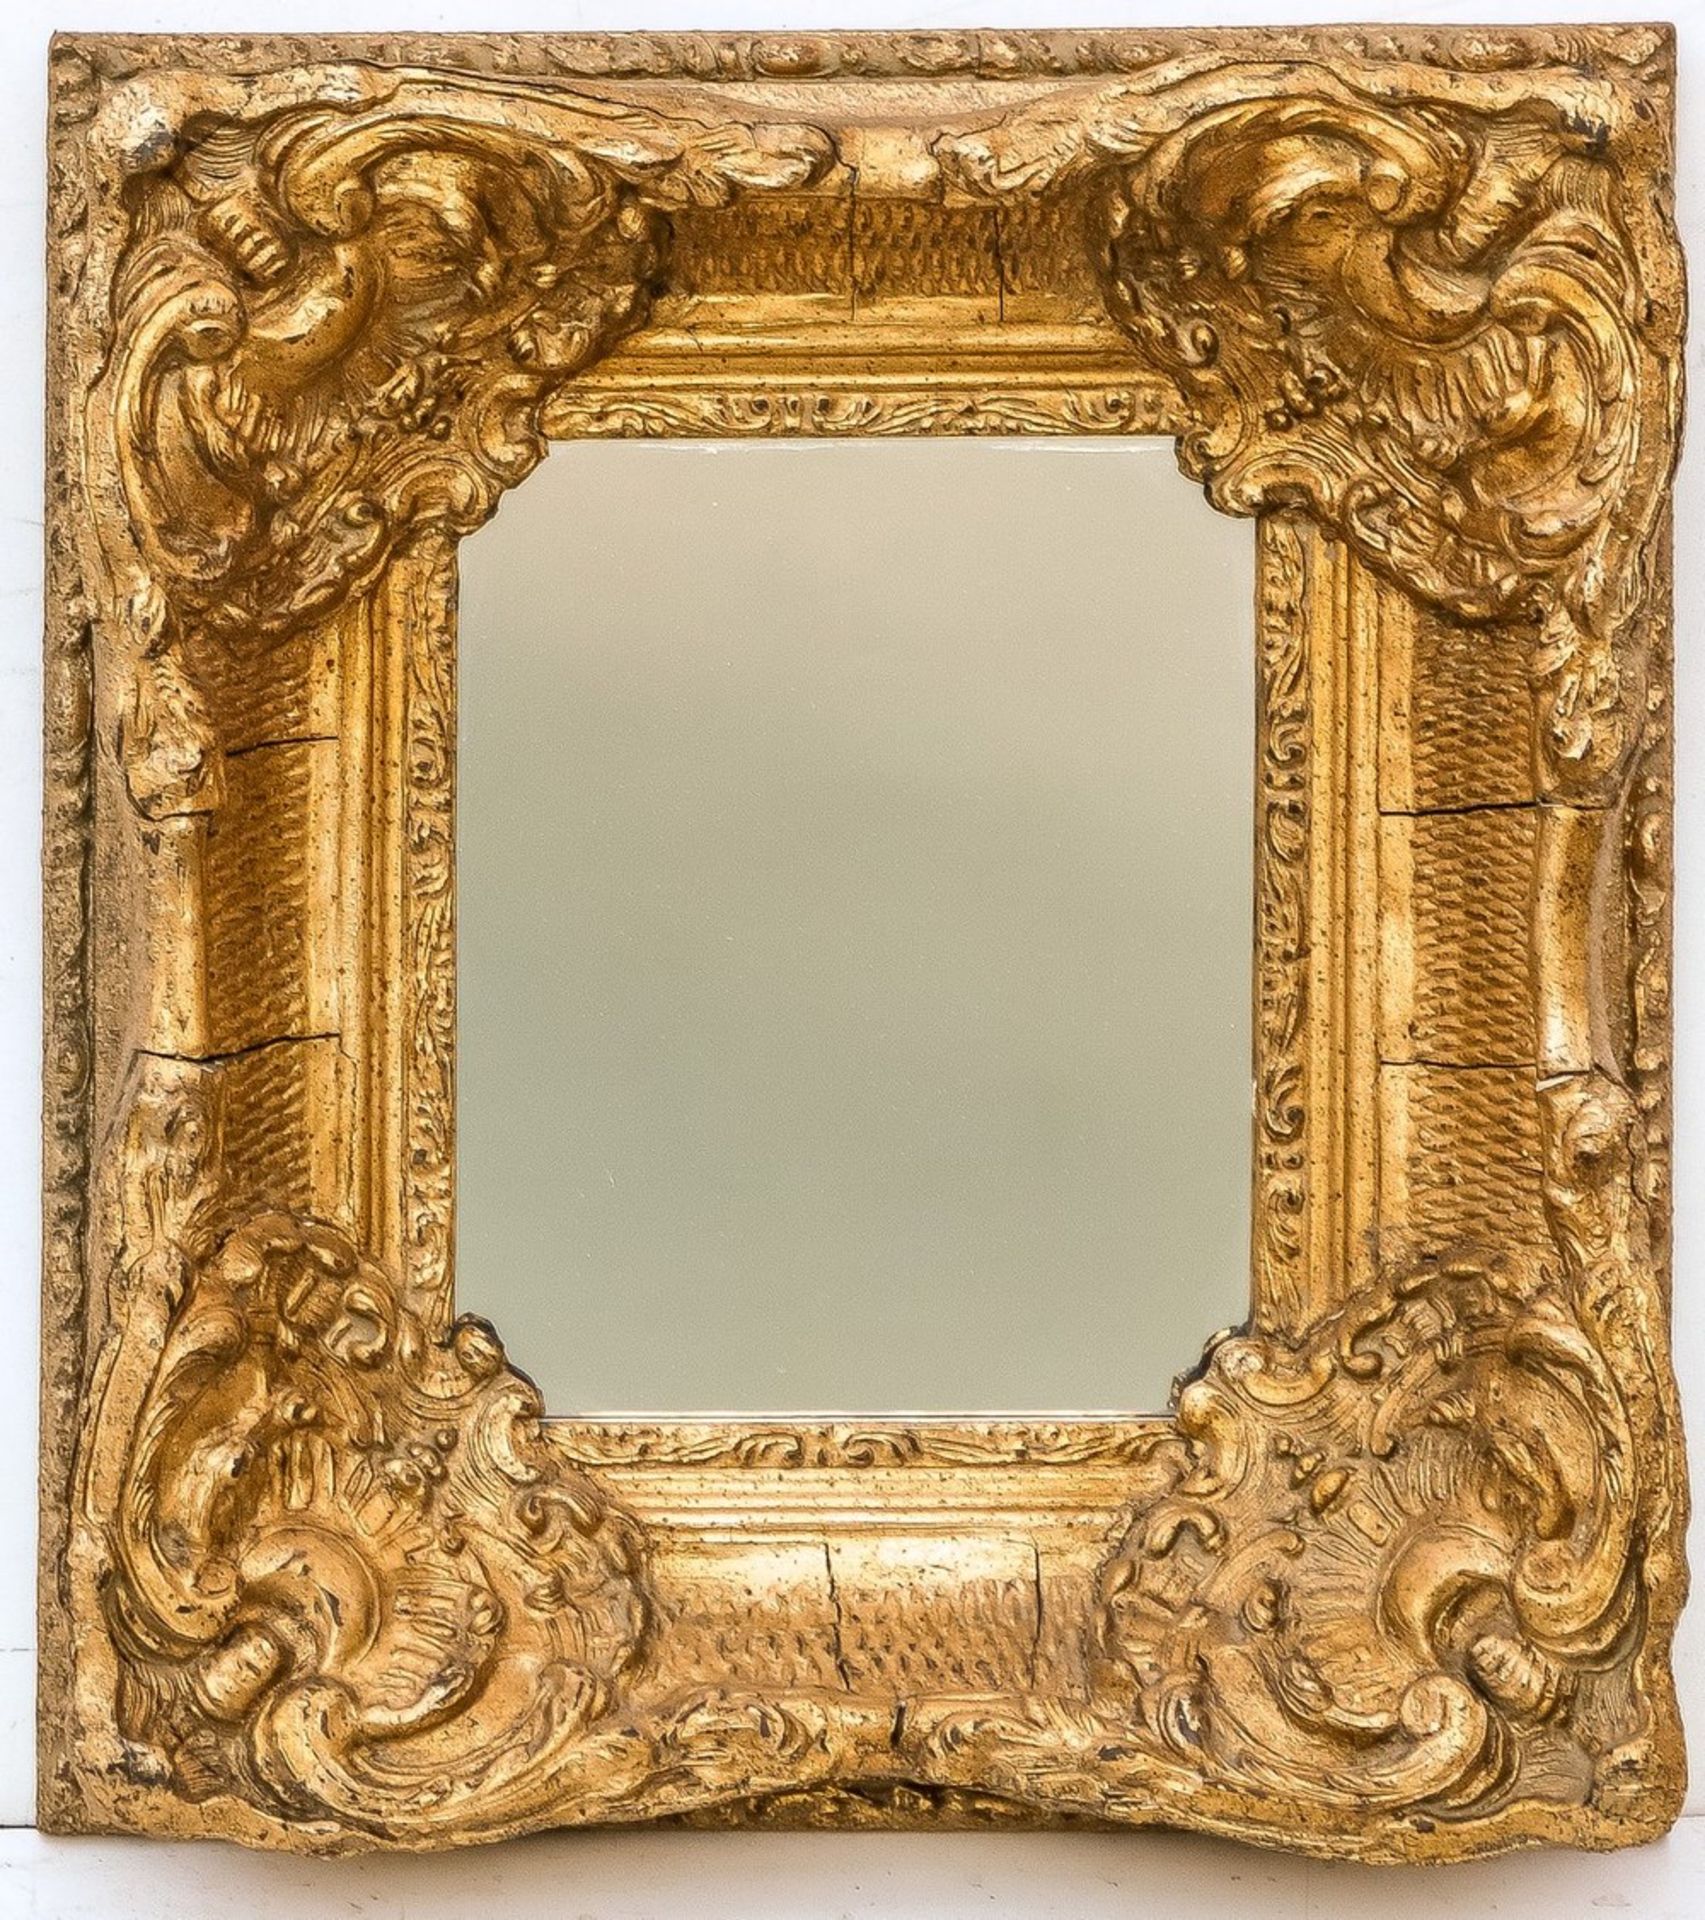 Kleiner Rahmenspiegel im BarockstilHolz und Stuck, vergoldet. Breiter, geschweifter Rahm